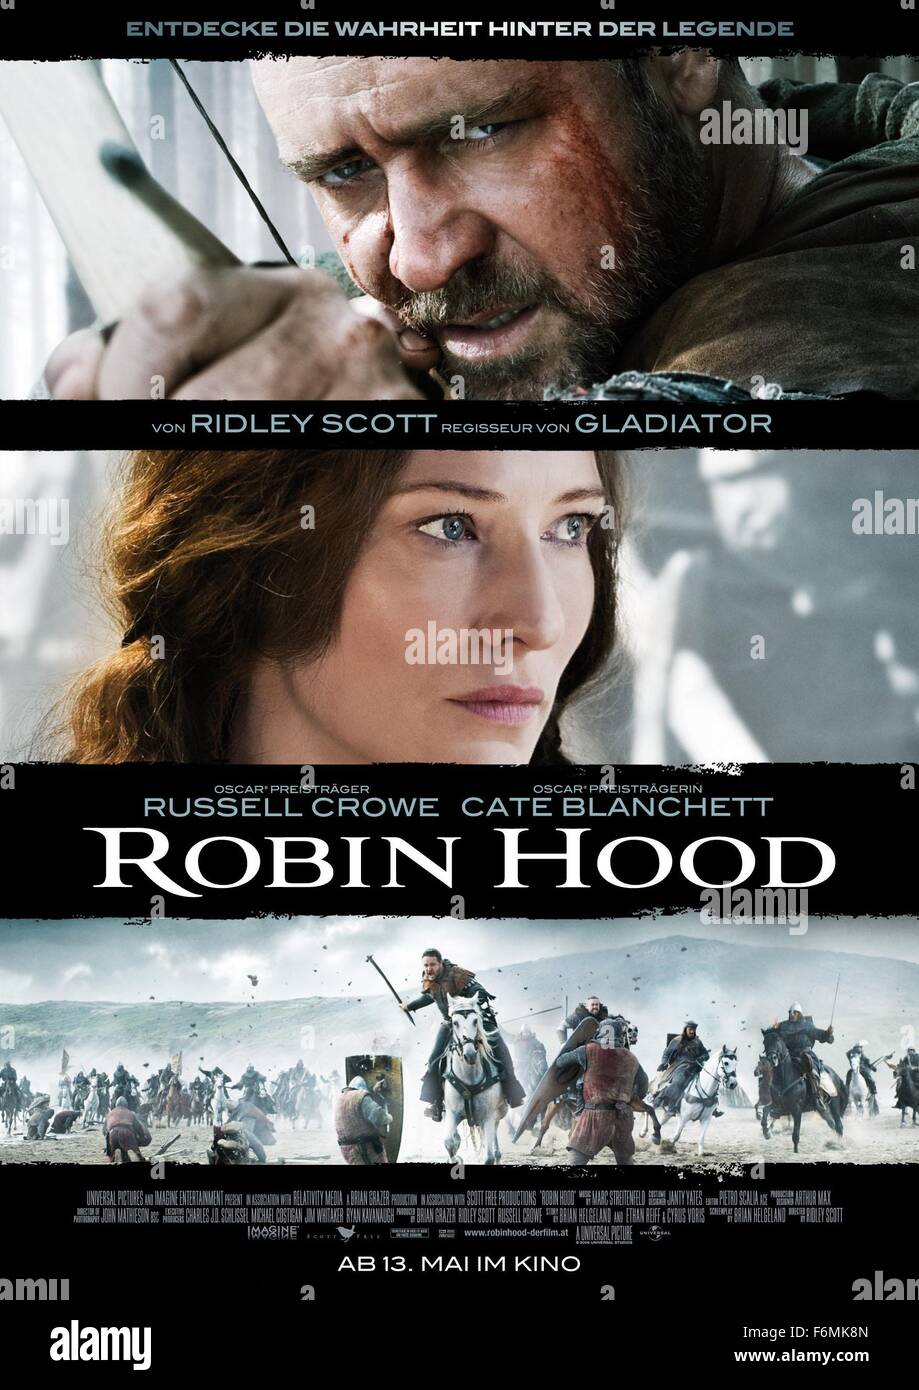 DATE DE SORTIE : Mai 14, 2010 TITRE DE LA VIDÉO : Robin Hood STUDIO :  Universal Pictures Réalisateur : Ridley Scott Résumé : L'histoire d'un  archer dans l'armée de Richard Coeur